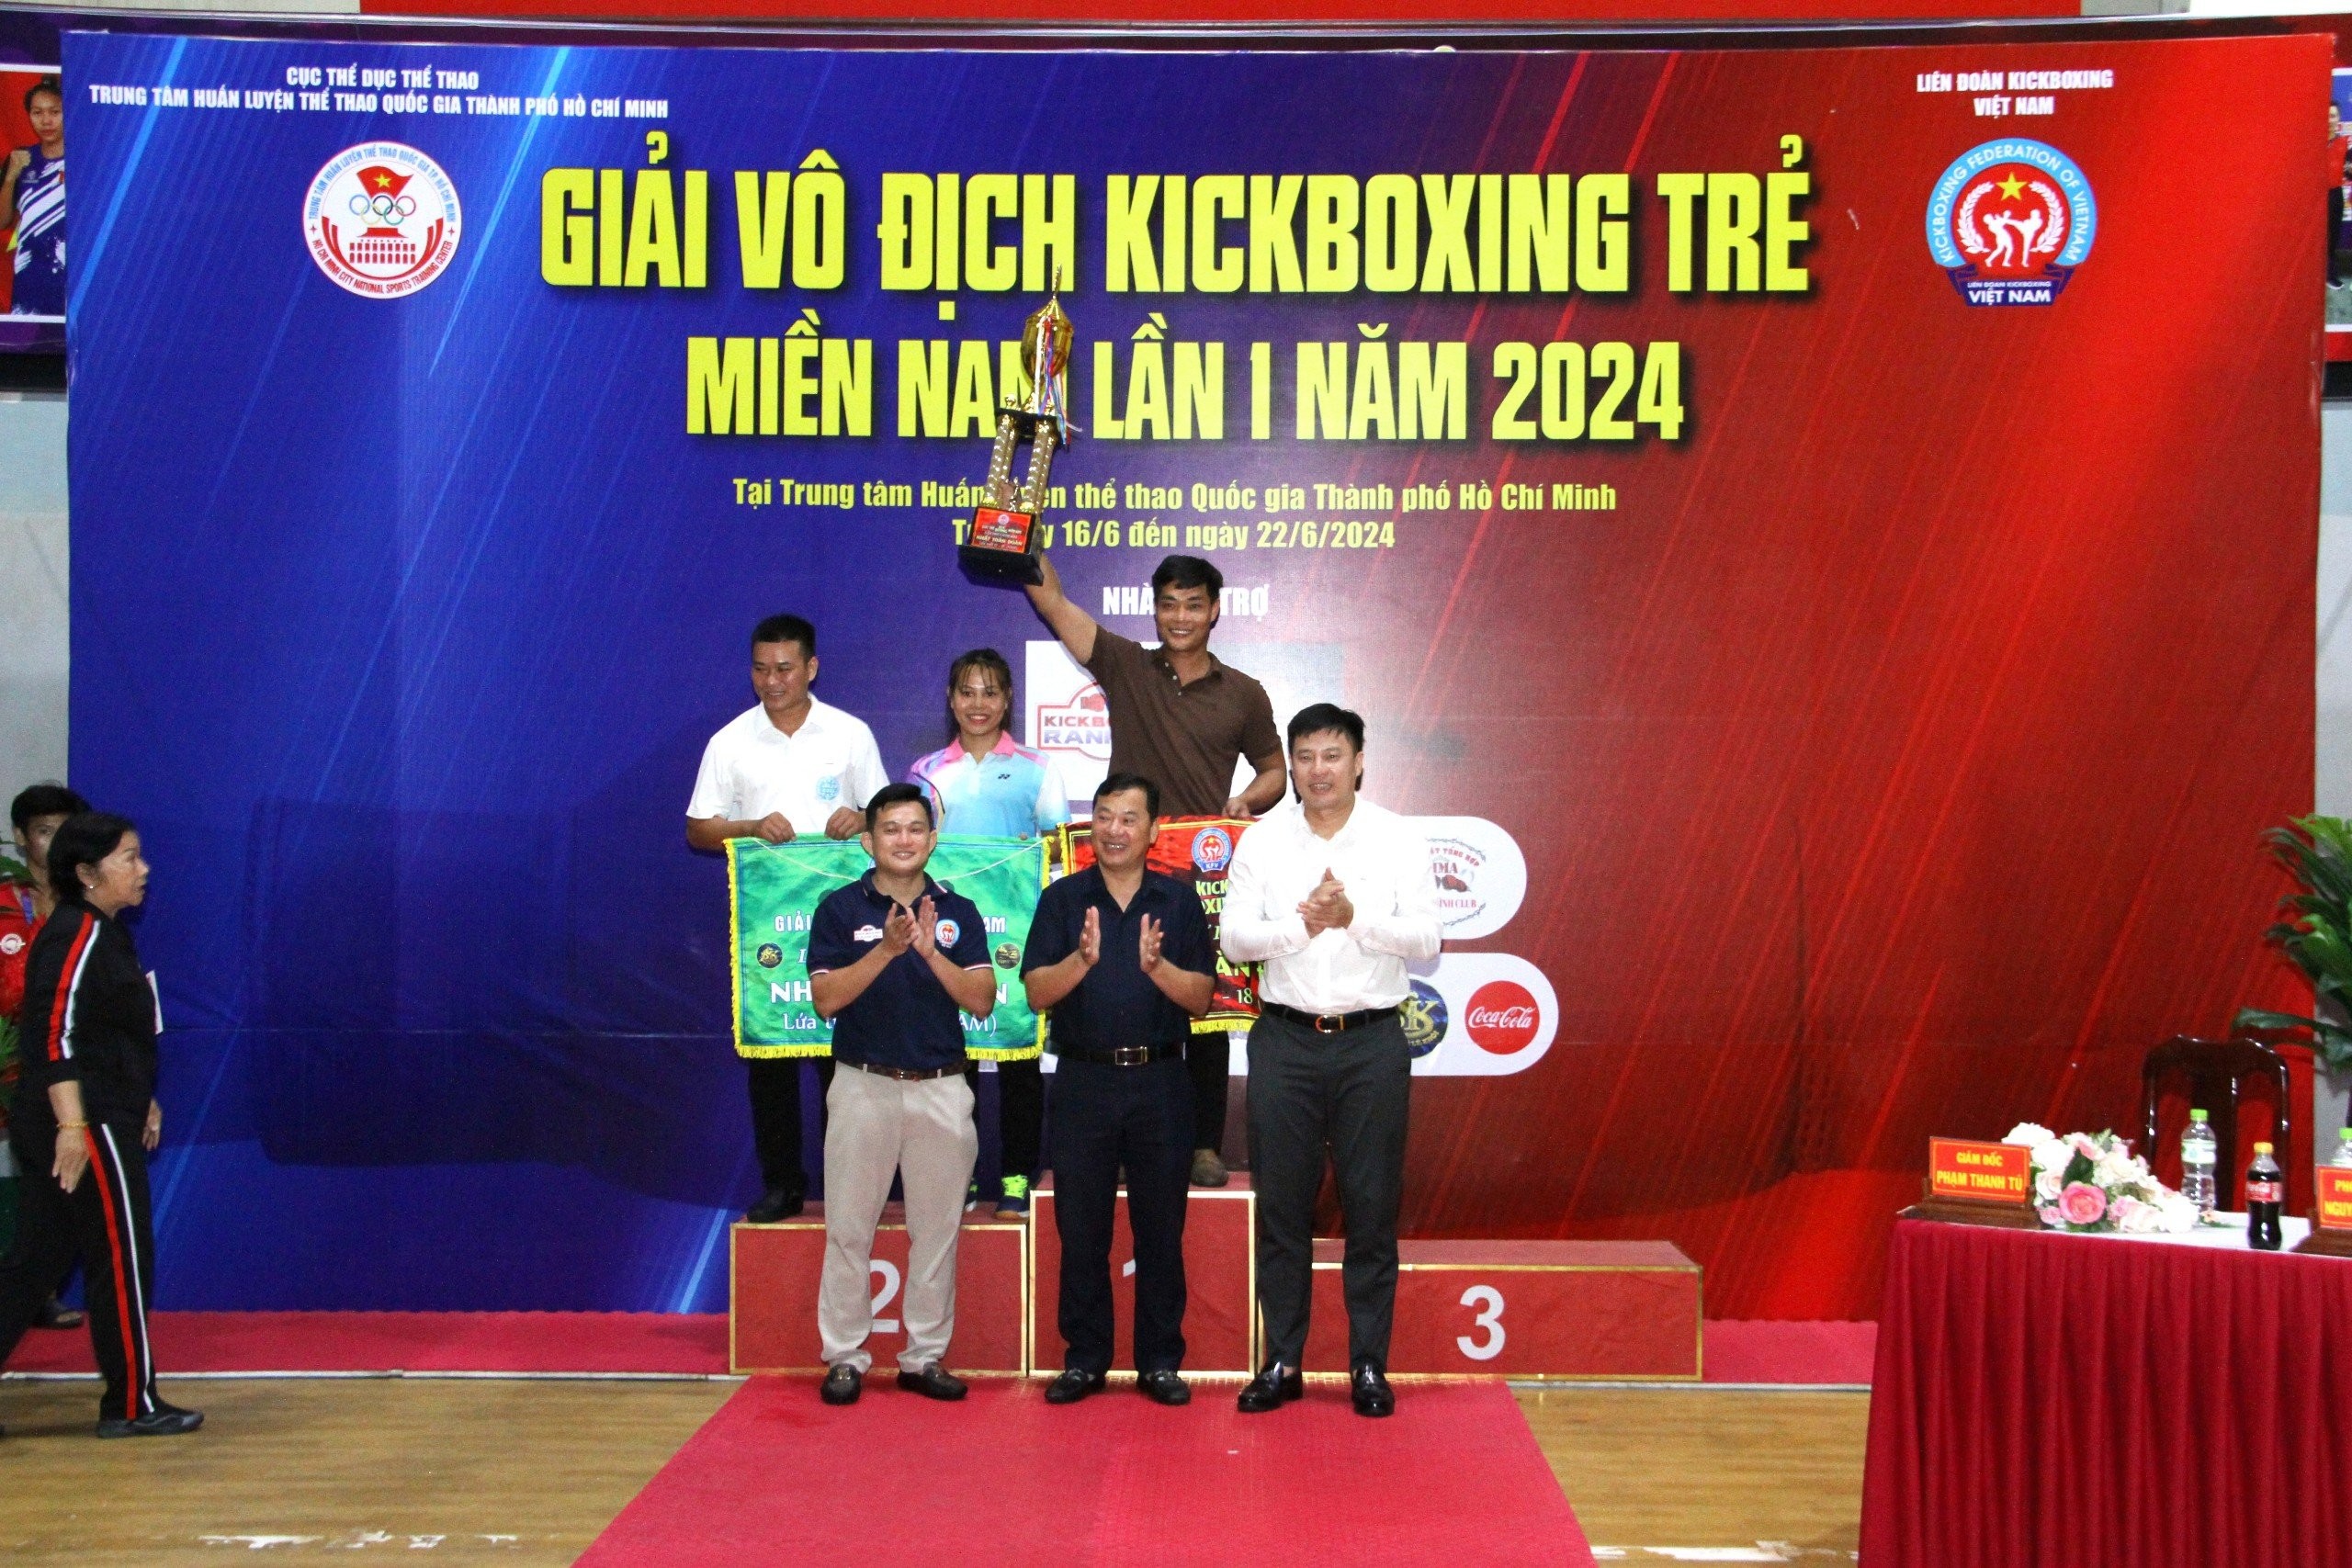 Phát hiện nhiều nhân tố mới cho Kickboxing Việt Nam